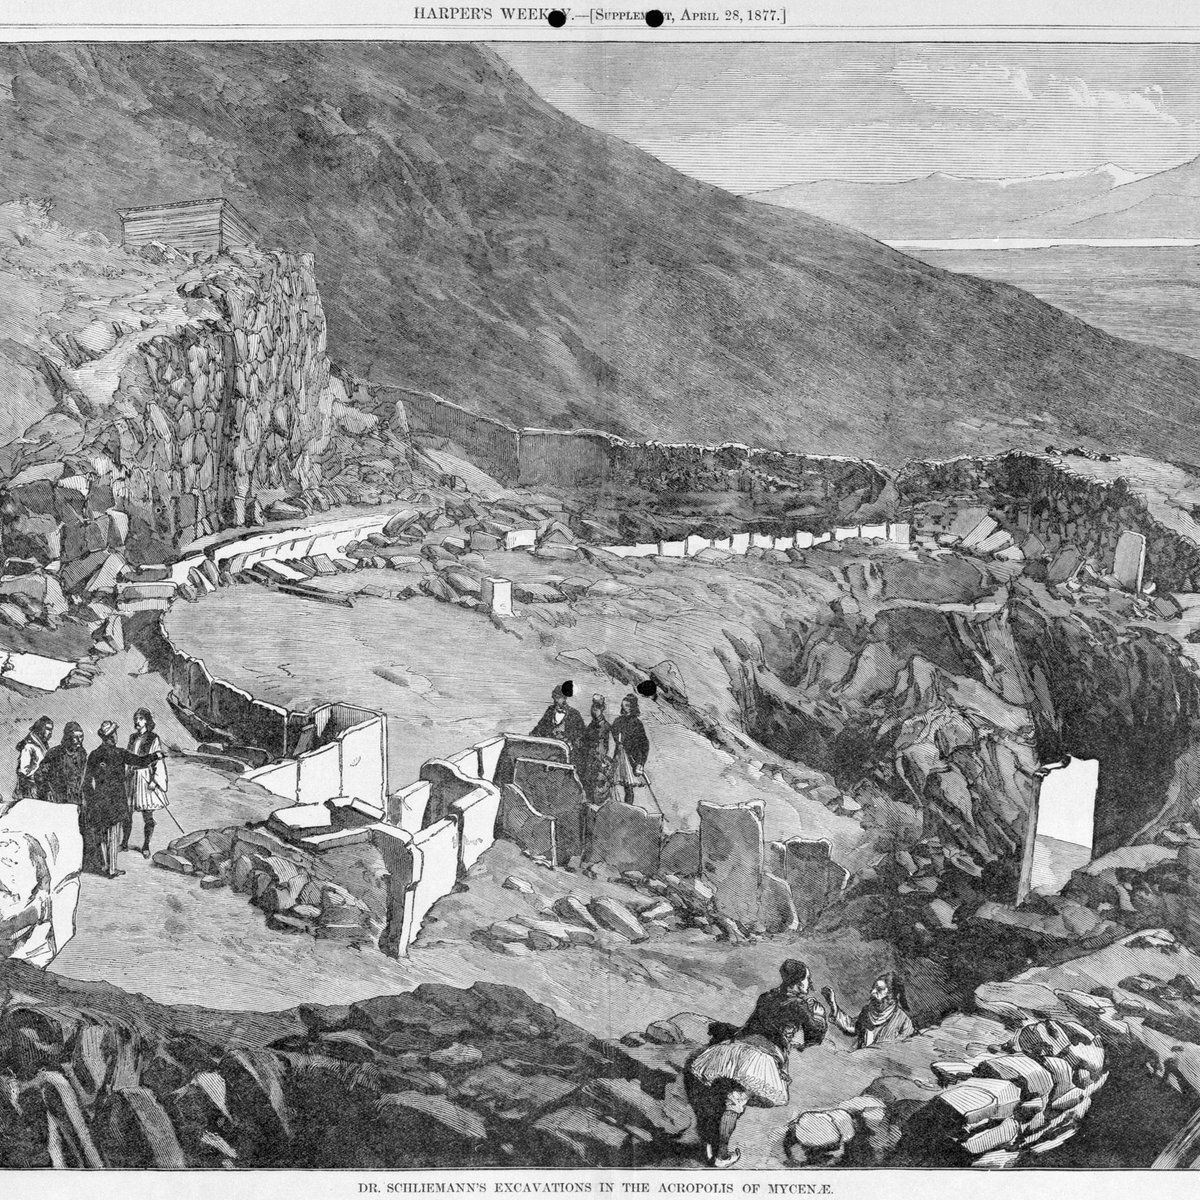 In 1876, he began digging at Mycenae.